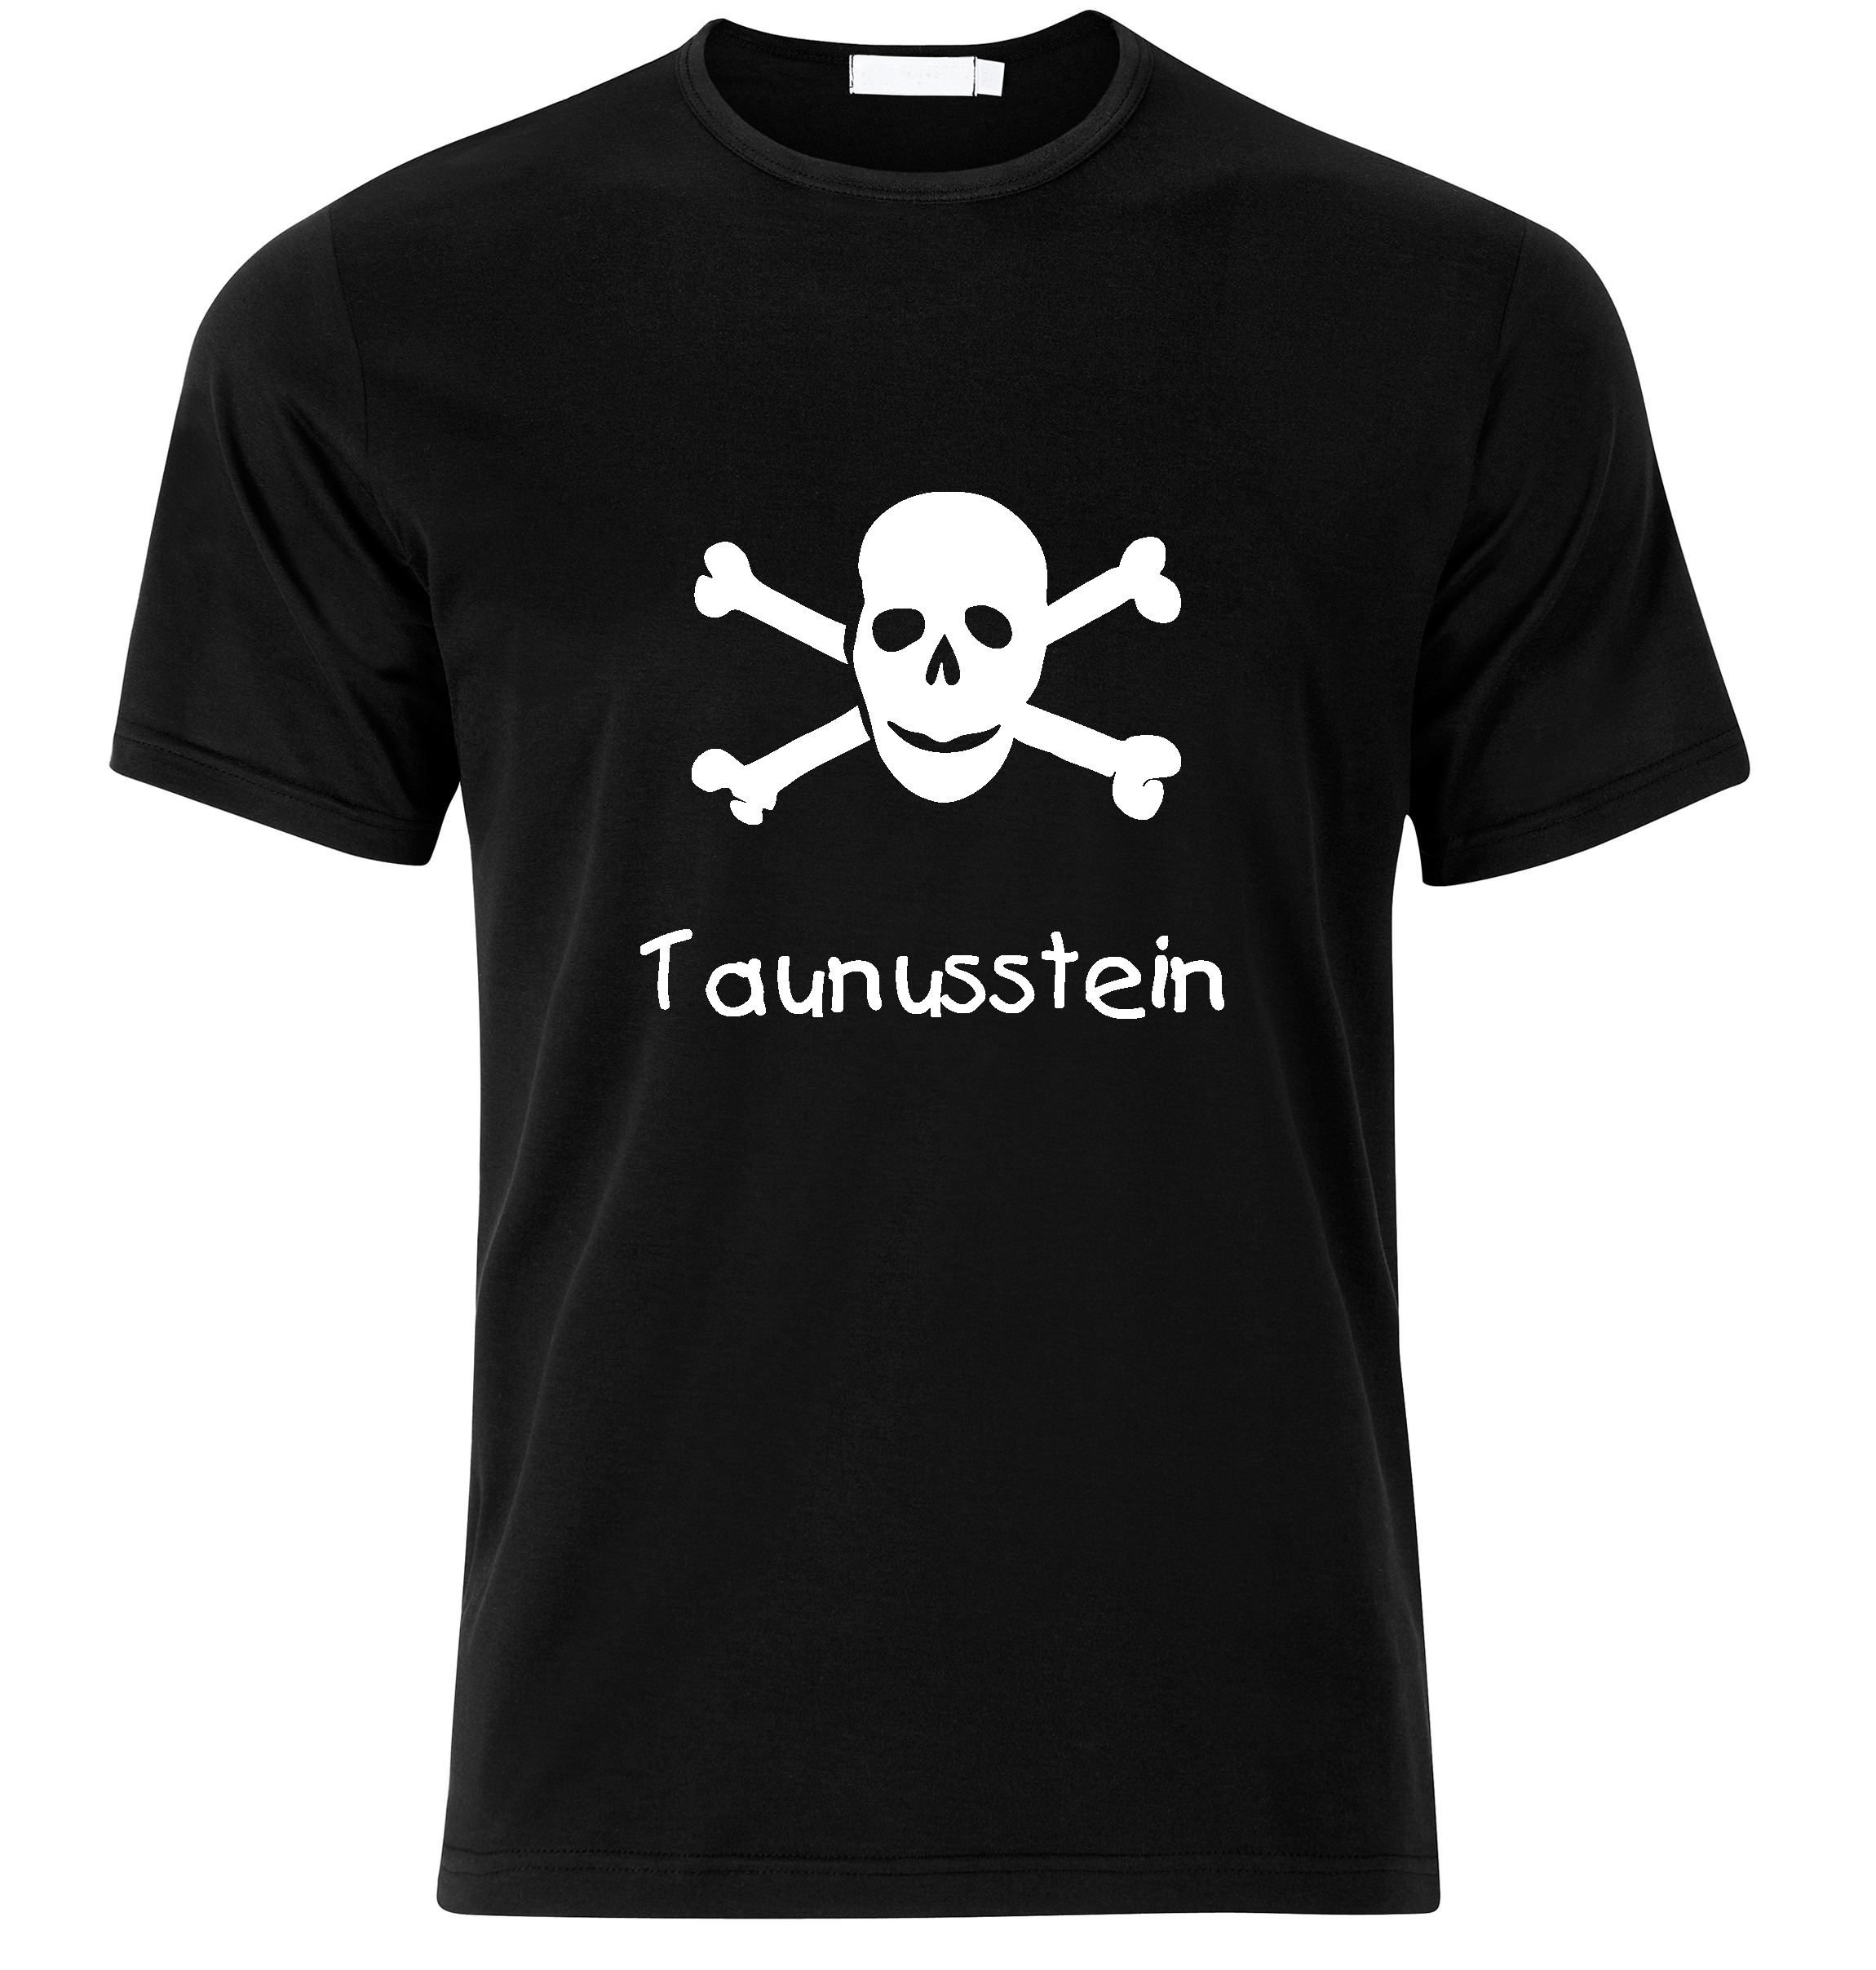 T-Shirt Taunusstein Jolly Roger, Totenkopf